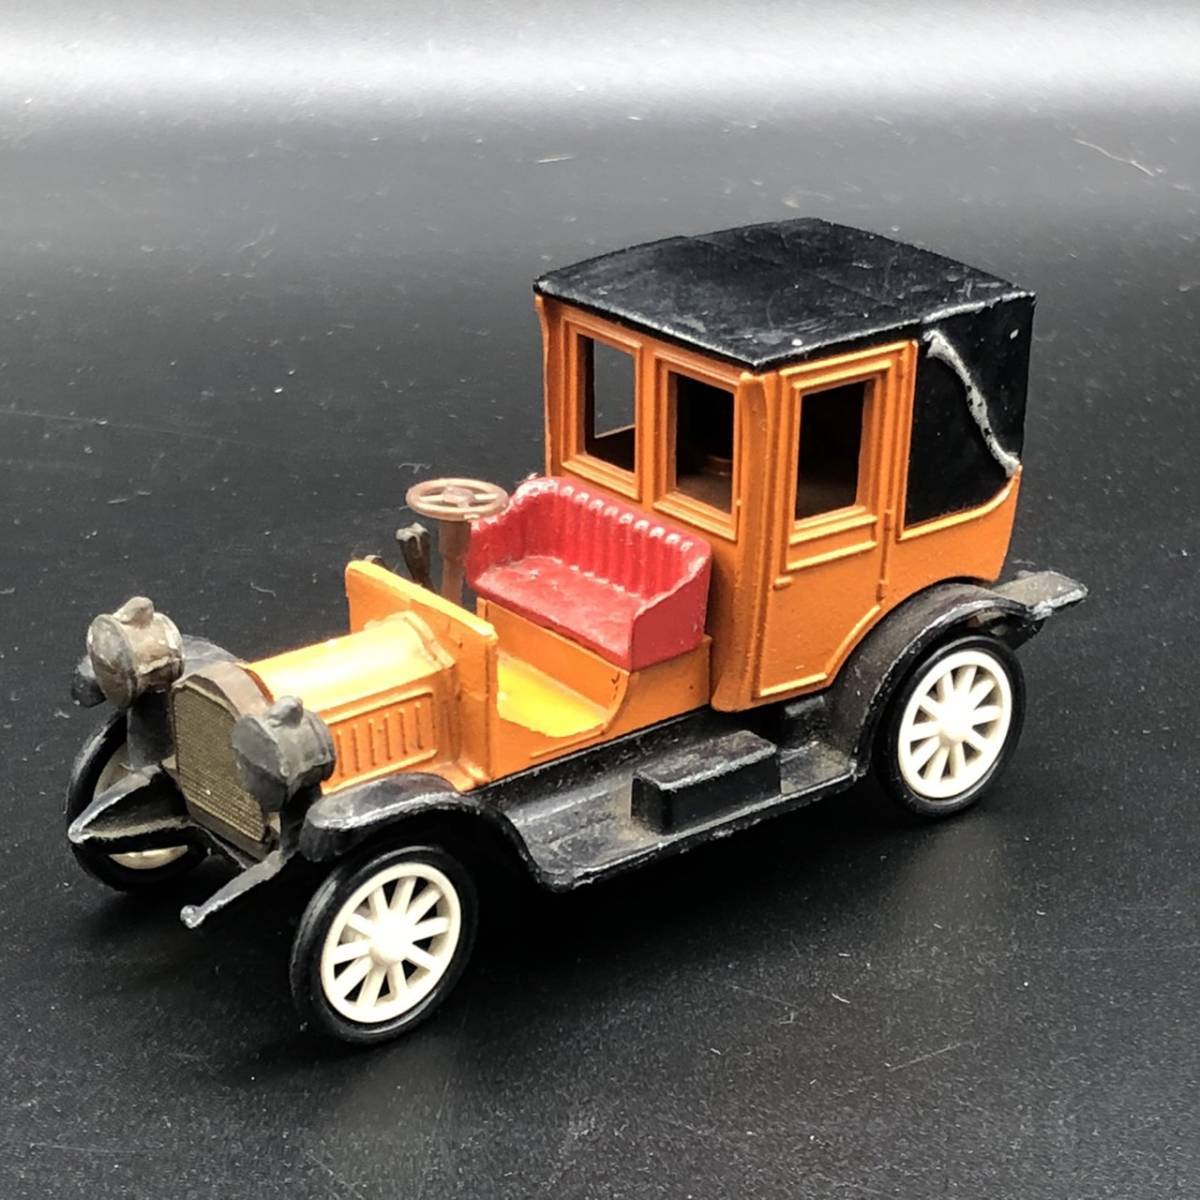 ★Rami/ラミー 1912 ミニカー 1/43 フランス製 車 玩具 おもちゃ ビンテージ★ NH2047_画像1